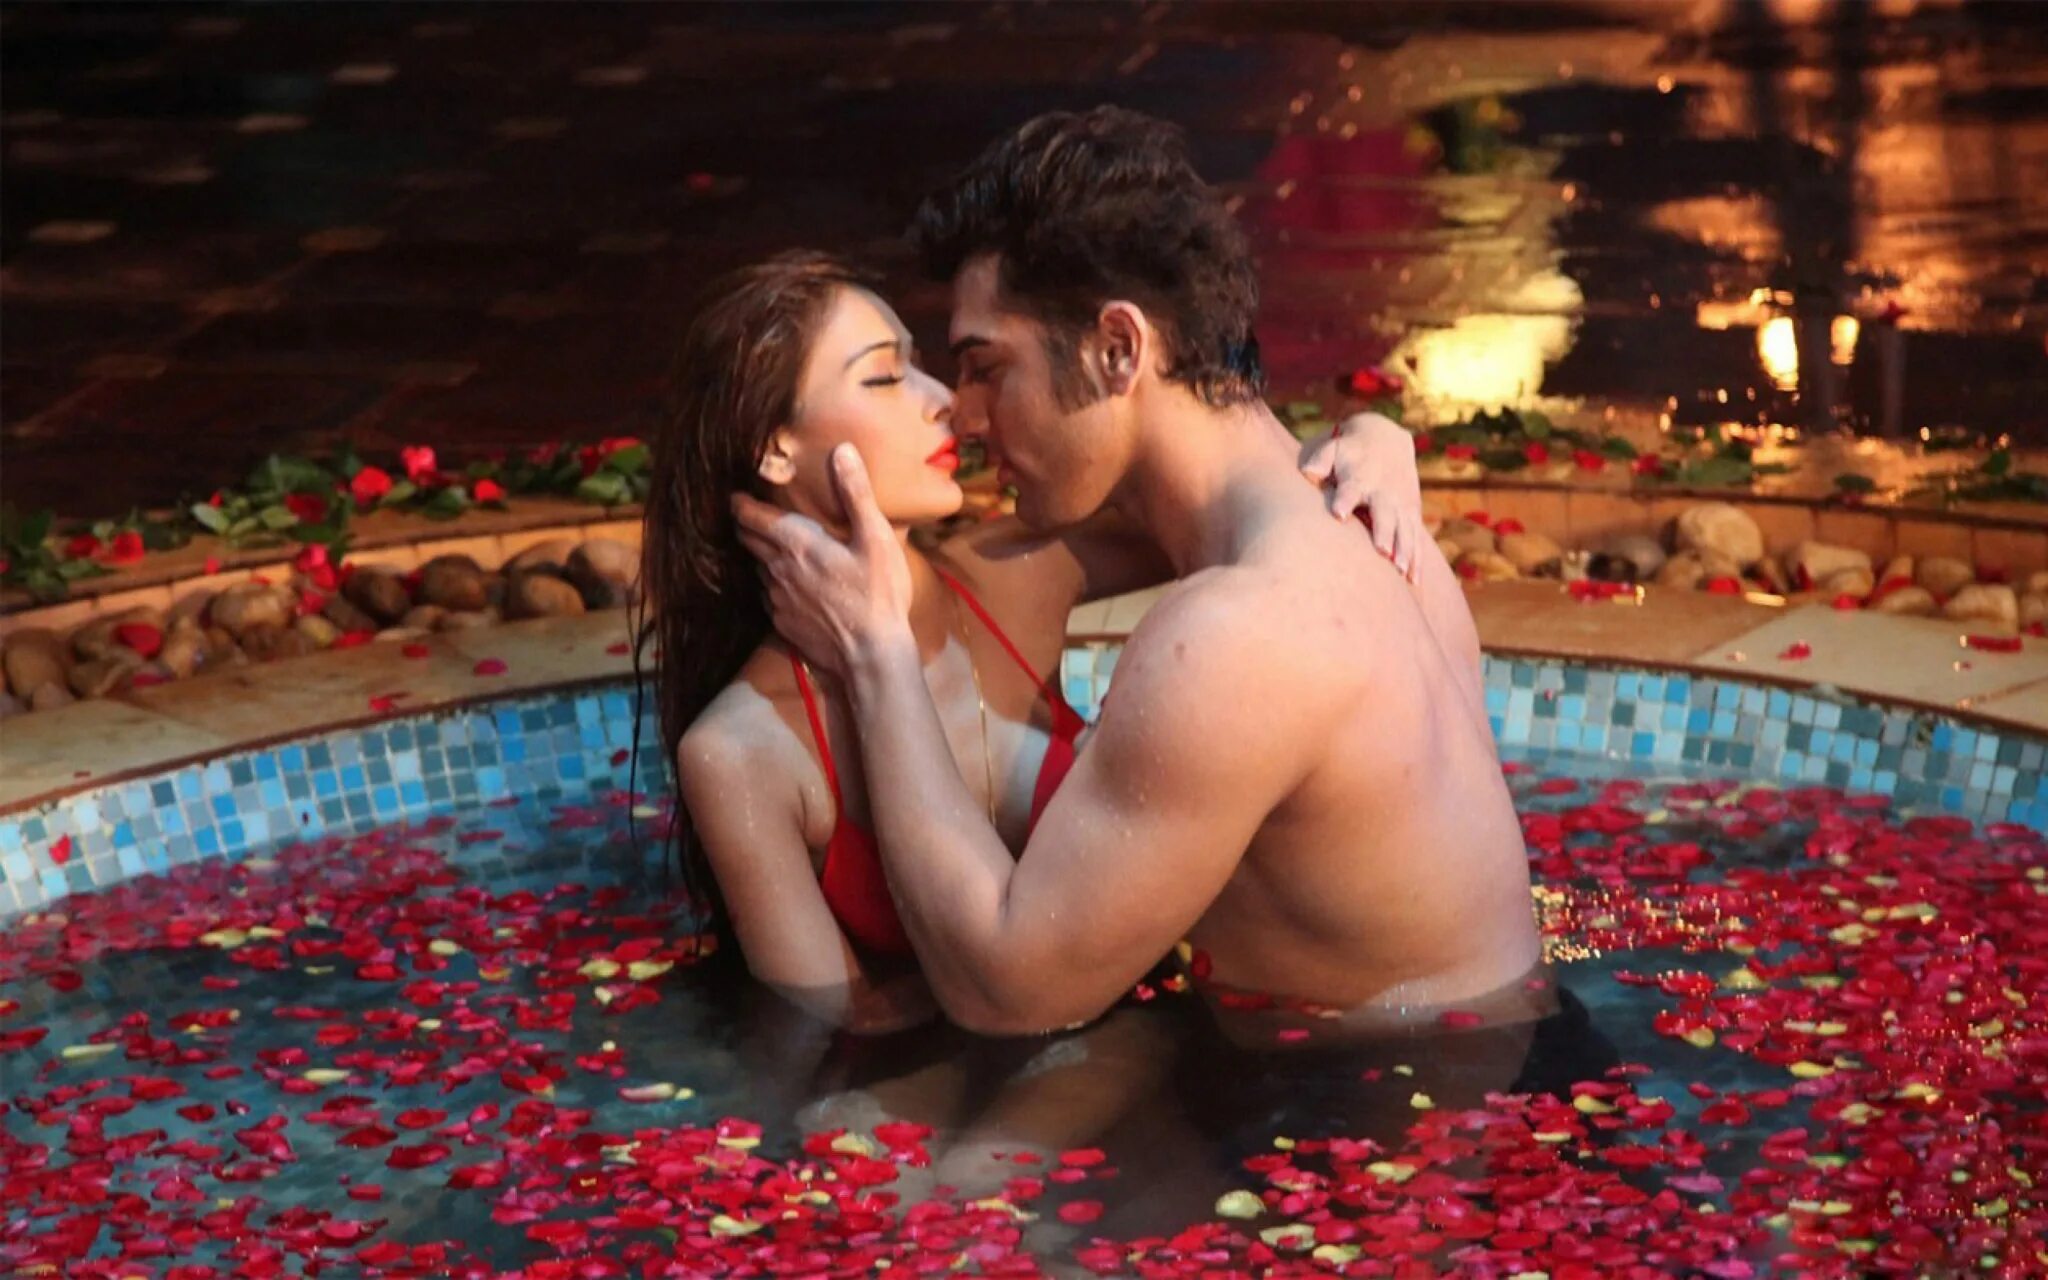 Откровенная любовь видео. Sara Khan Midsummer. Романтические фото. Поцелуй в бассейне. Романтика в бассейне.